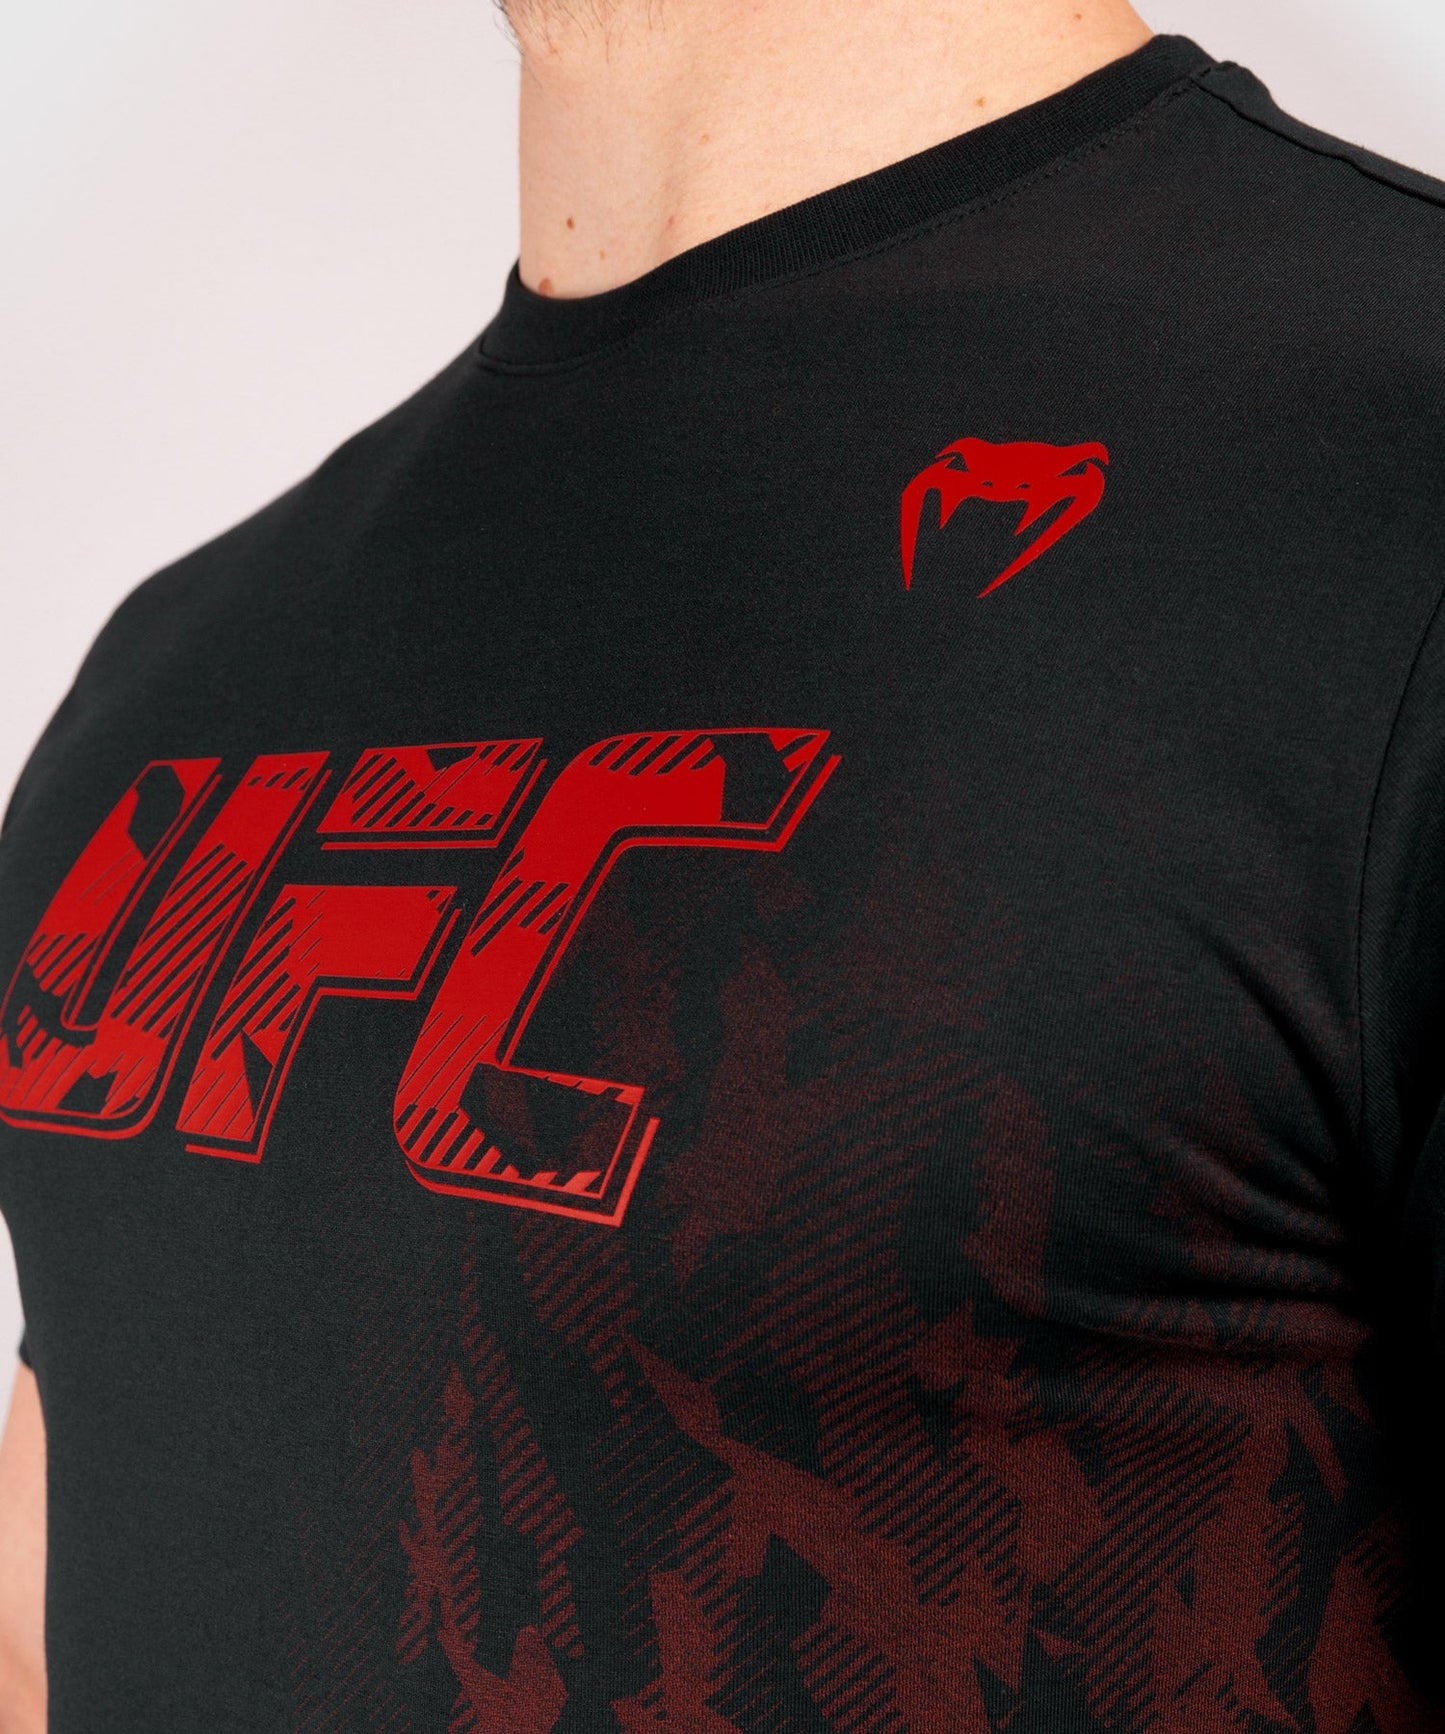 UFC Venum Authentic Fight Week Men's Short Sleeve T-shirt - Black